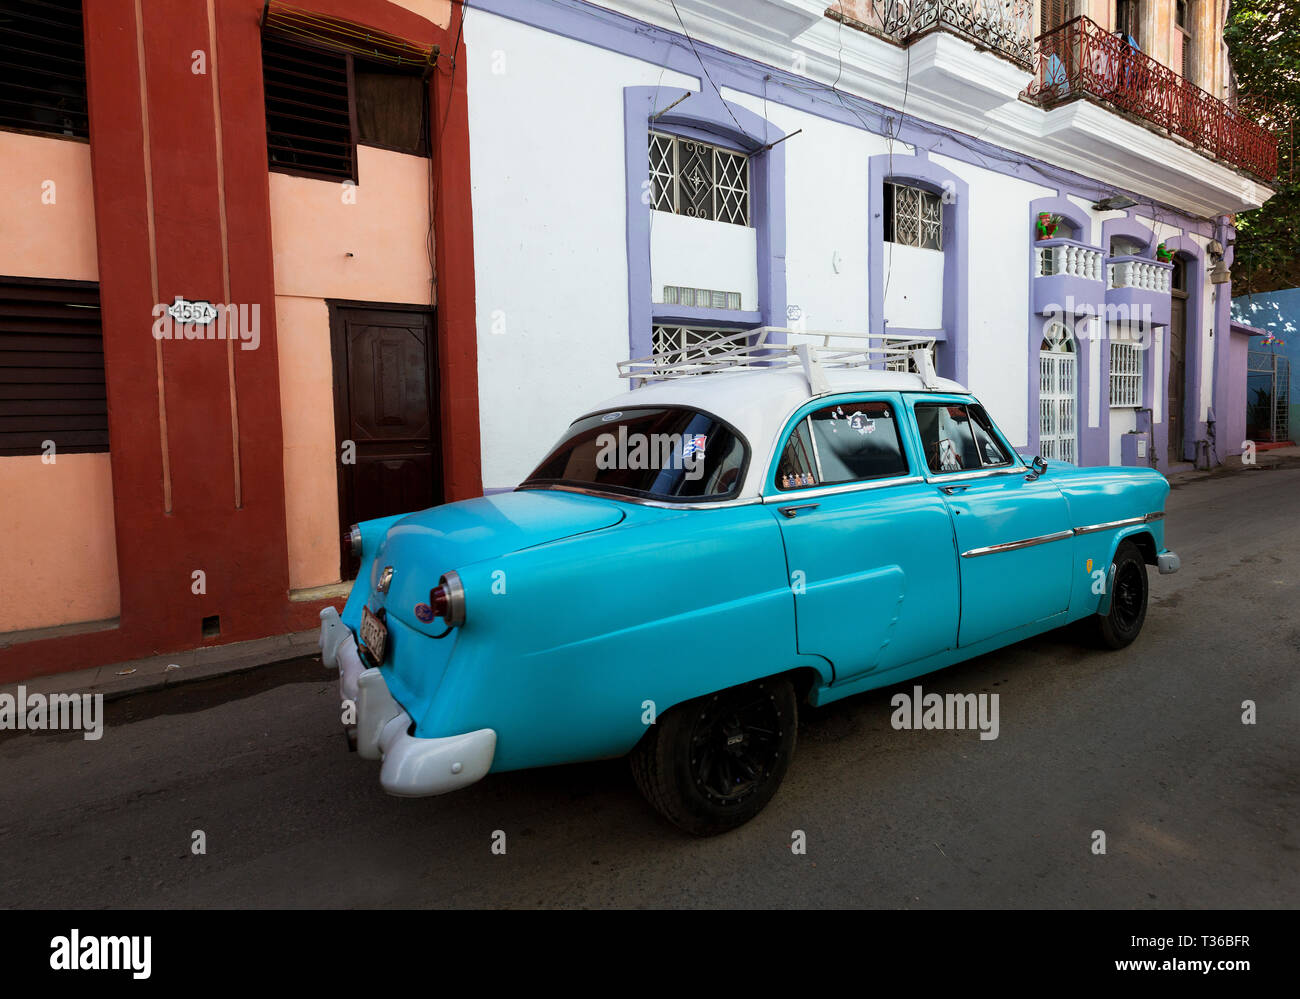 In den Farben Blau und Weiß 1952 Ford Customline viertürigen Limousine fahren auf Strasse mit bunten Gebäude in Havanna, Kuba Stockfoto